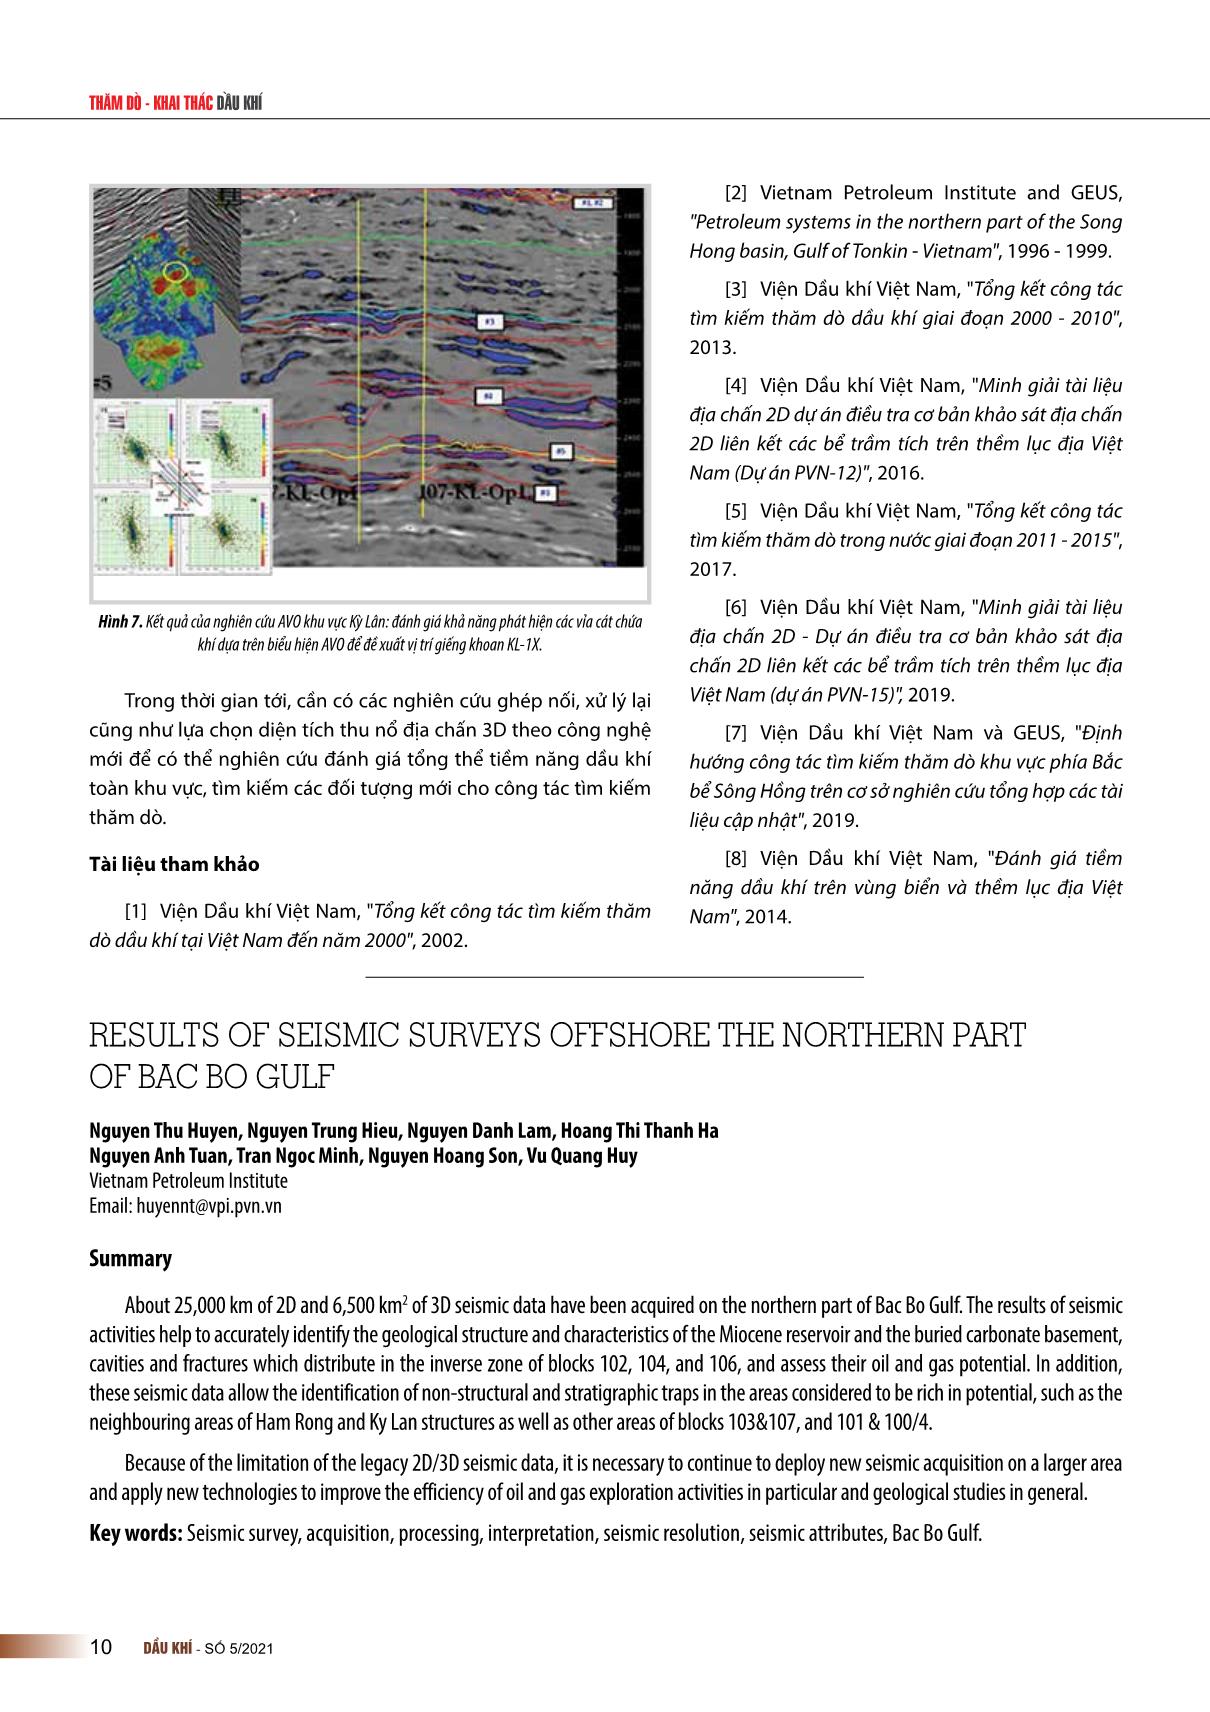 Kết quả khảo sát địa chấn khu vực ngoài khơi phía Bắc vịnh Bắc Bộ trang 6